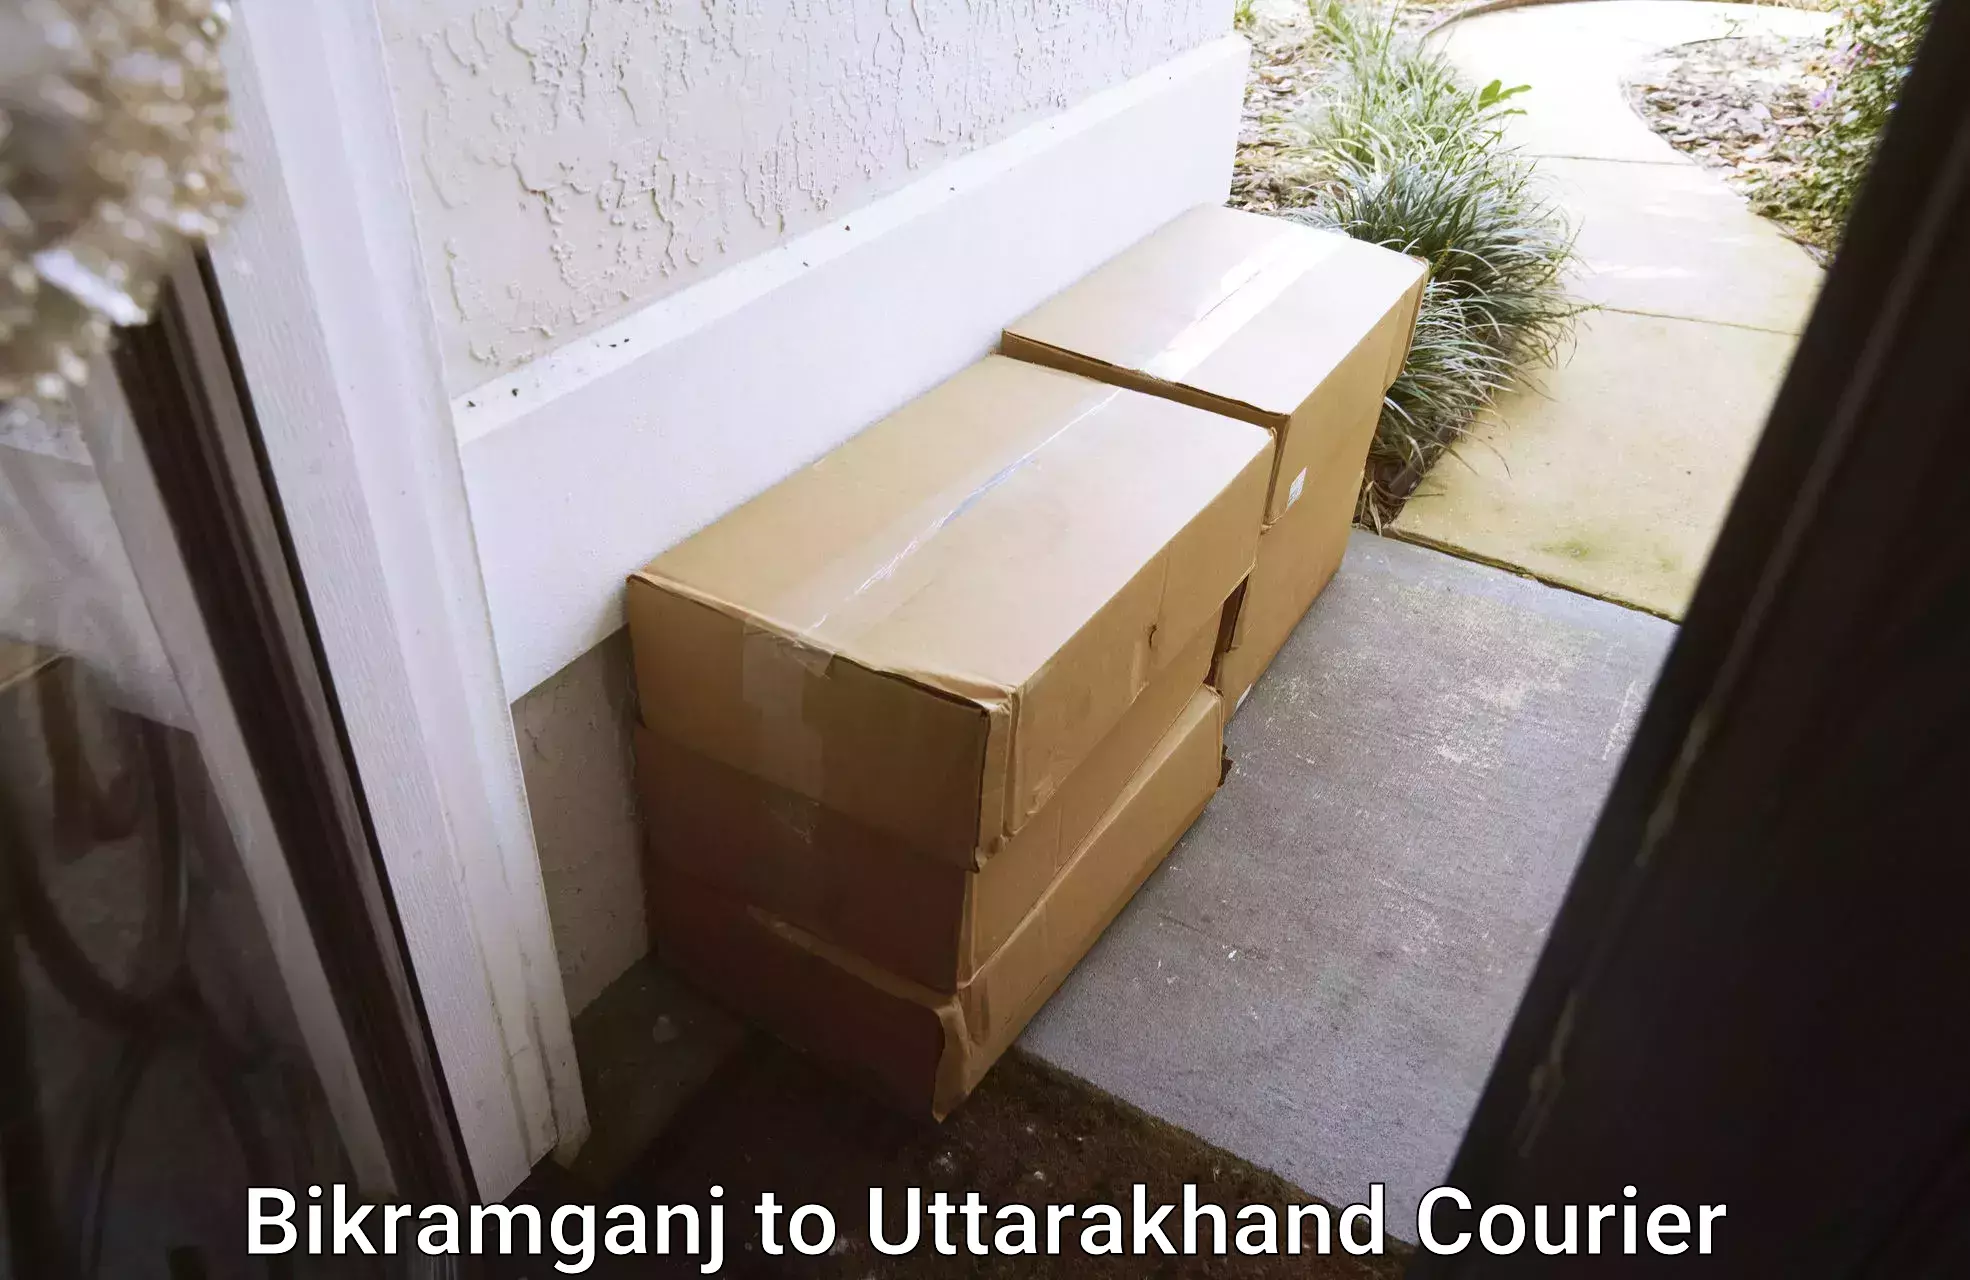 Furniture delivery service Bikramganj to IIT Roorkee